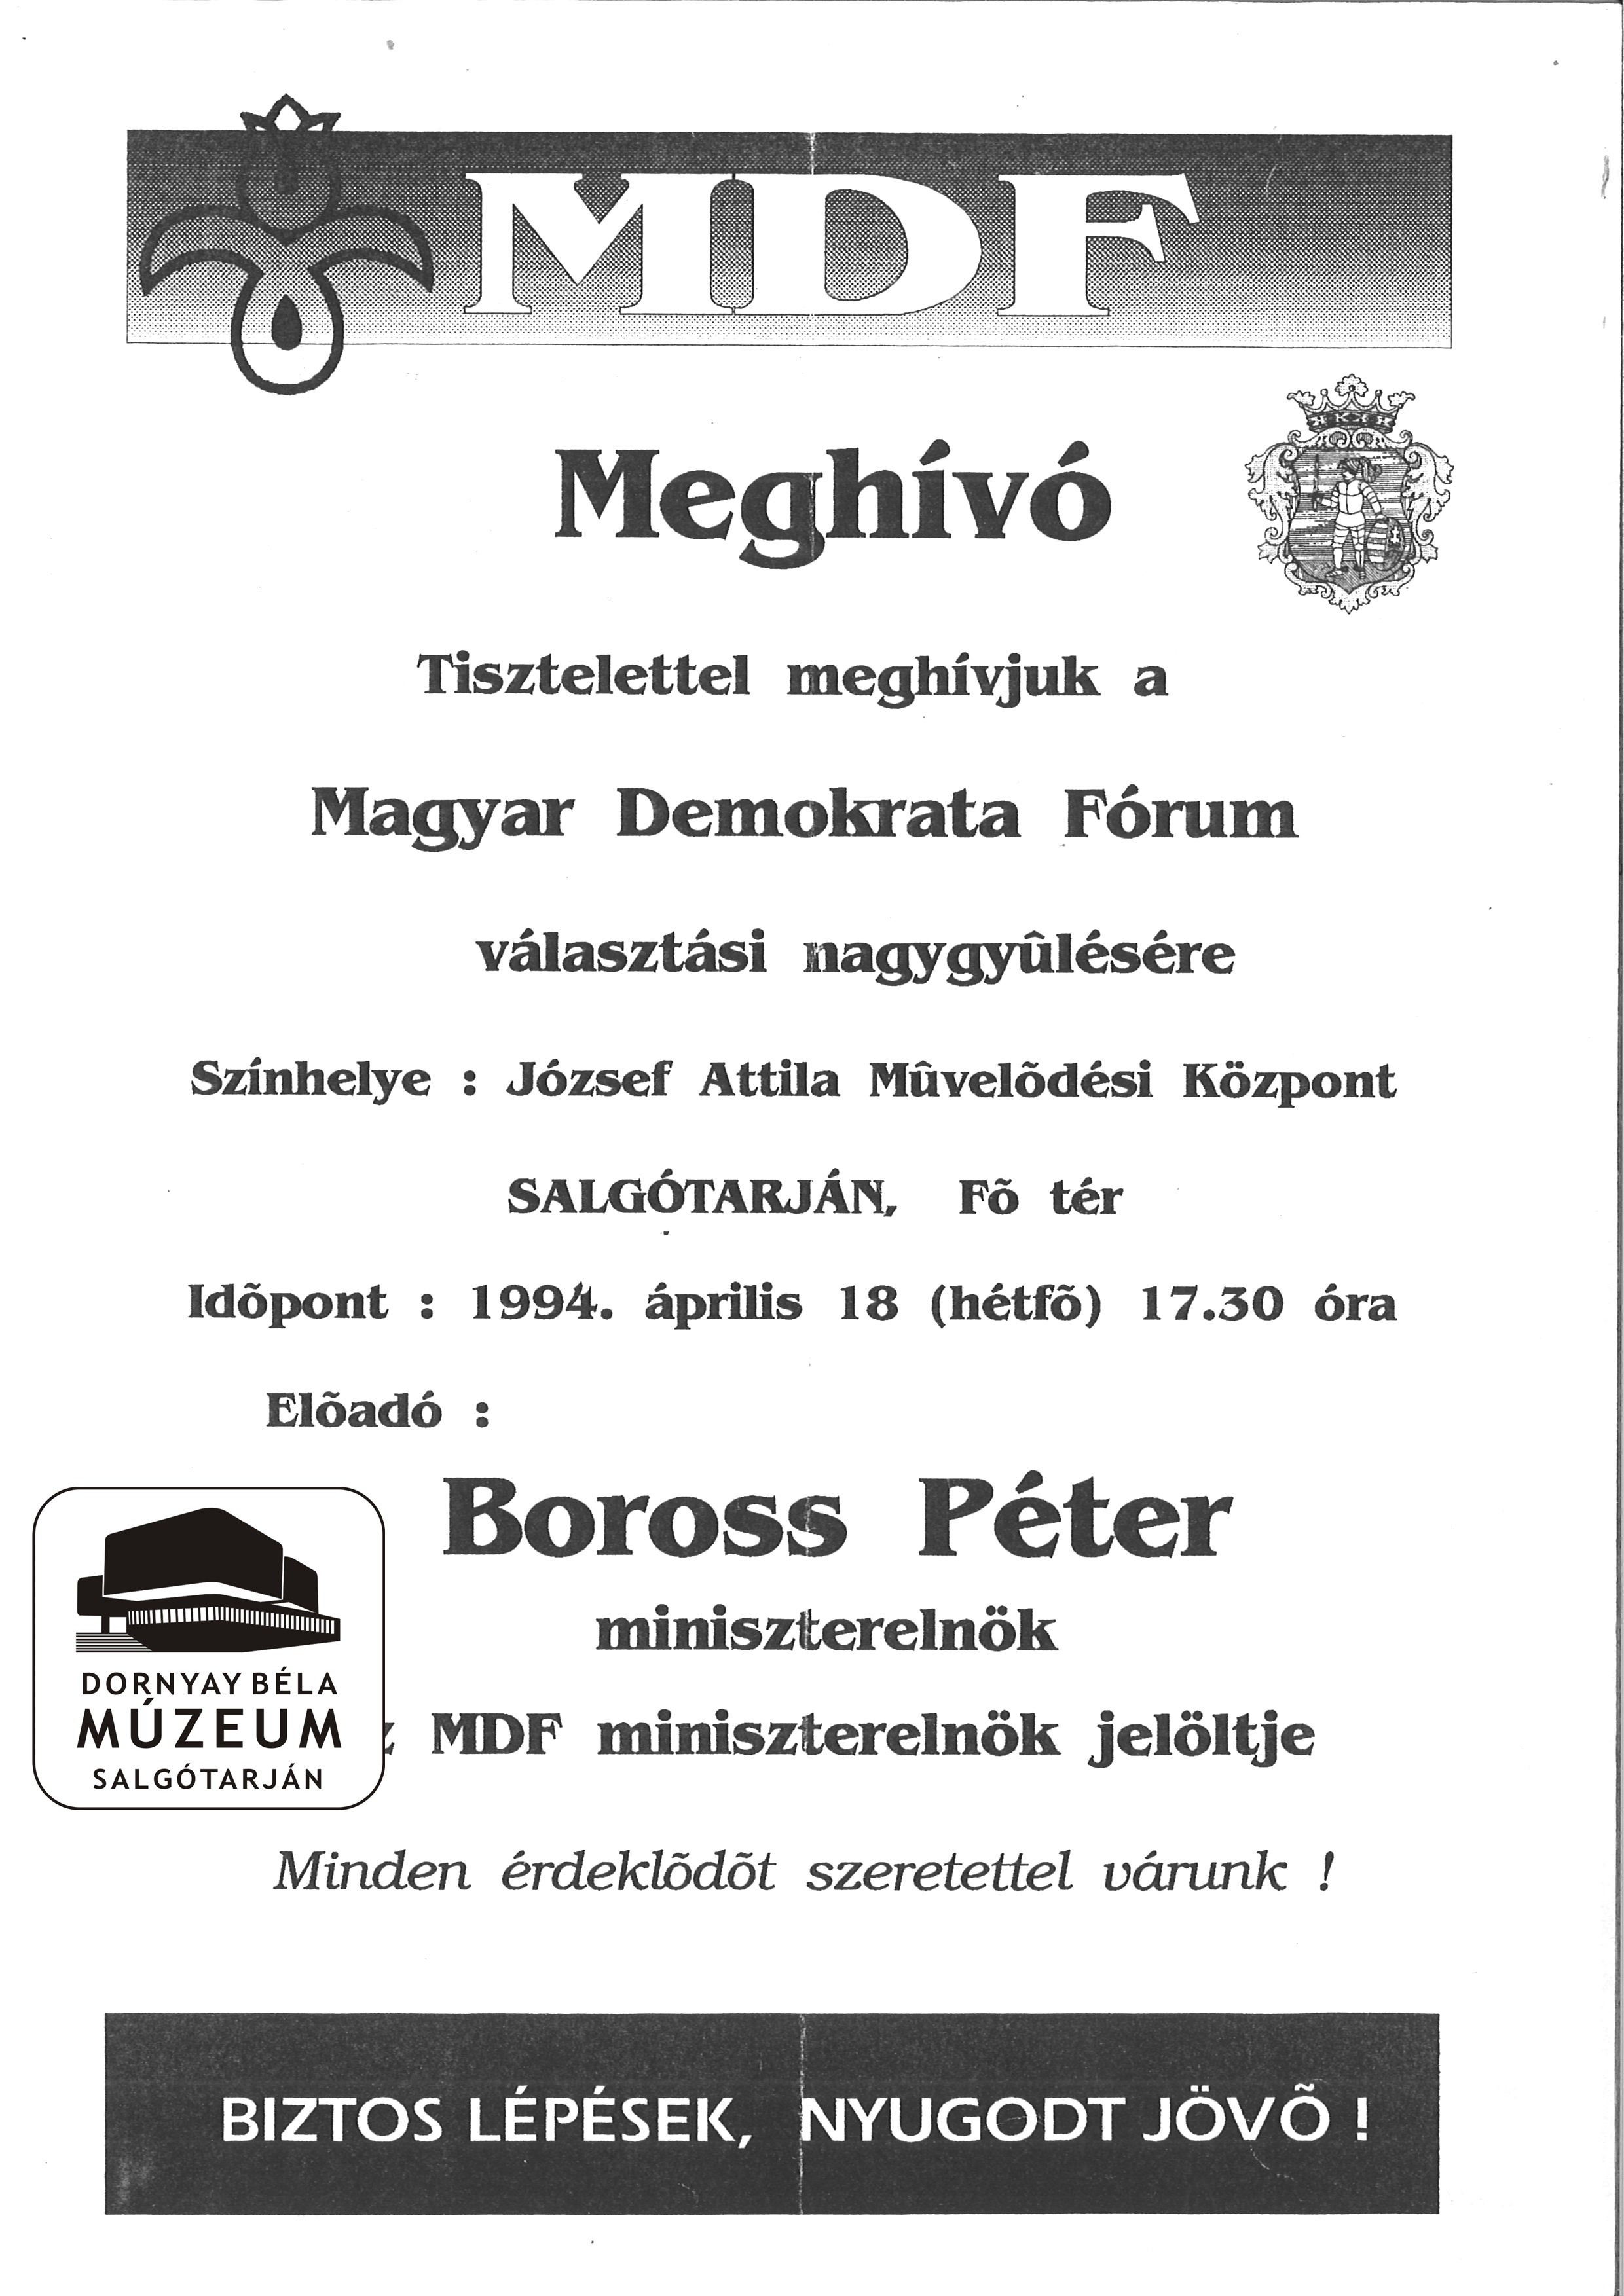 Meghívó a Magyar Demokrata Fórum választási nagygyűlésére (Dornyay Béla Múzeum, Salgótarján CC BY-NC-SA)